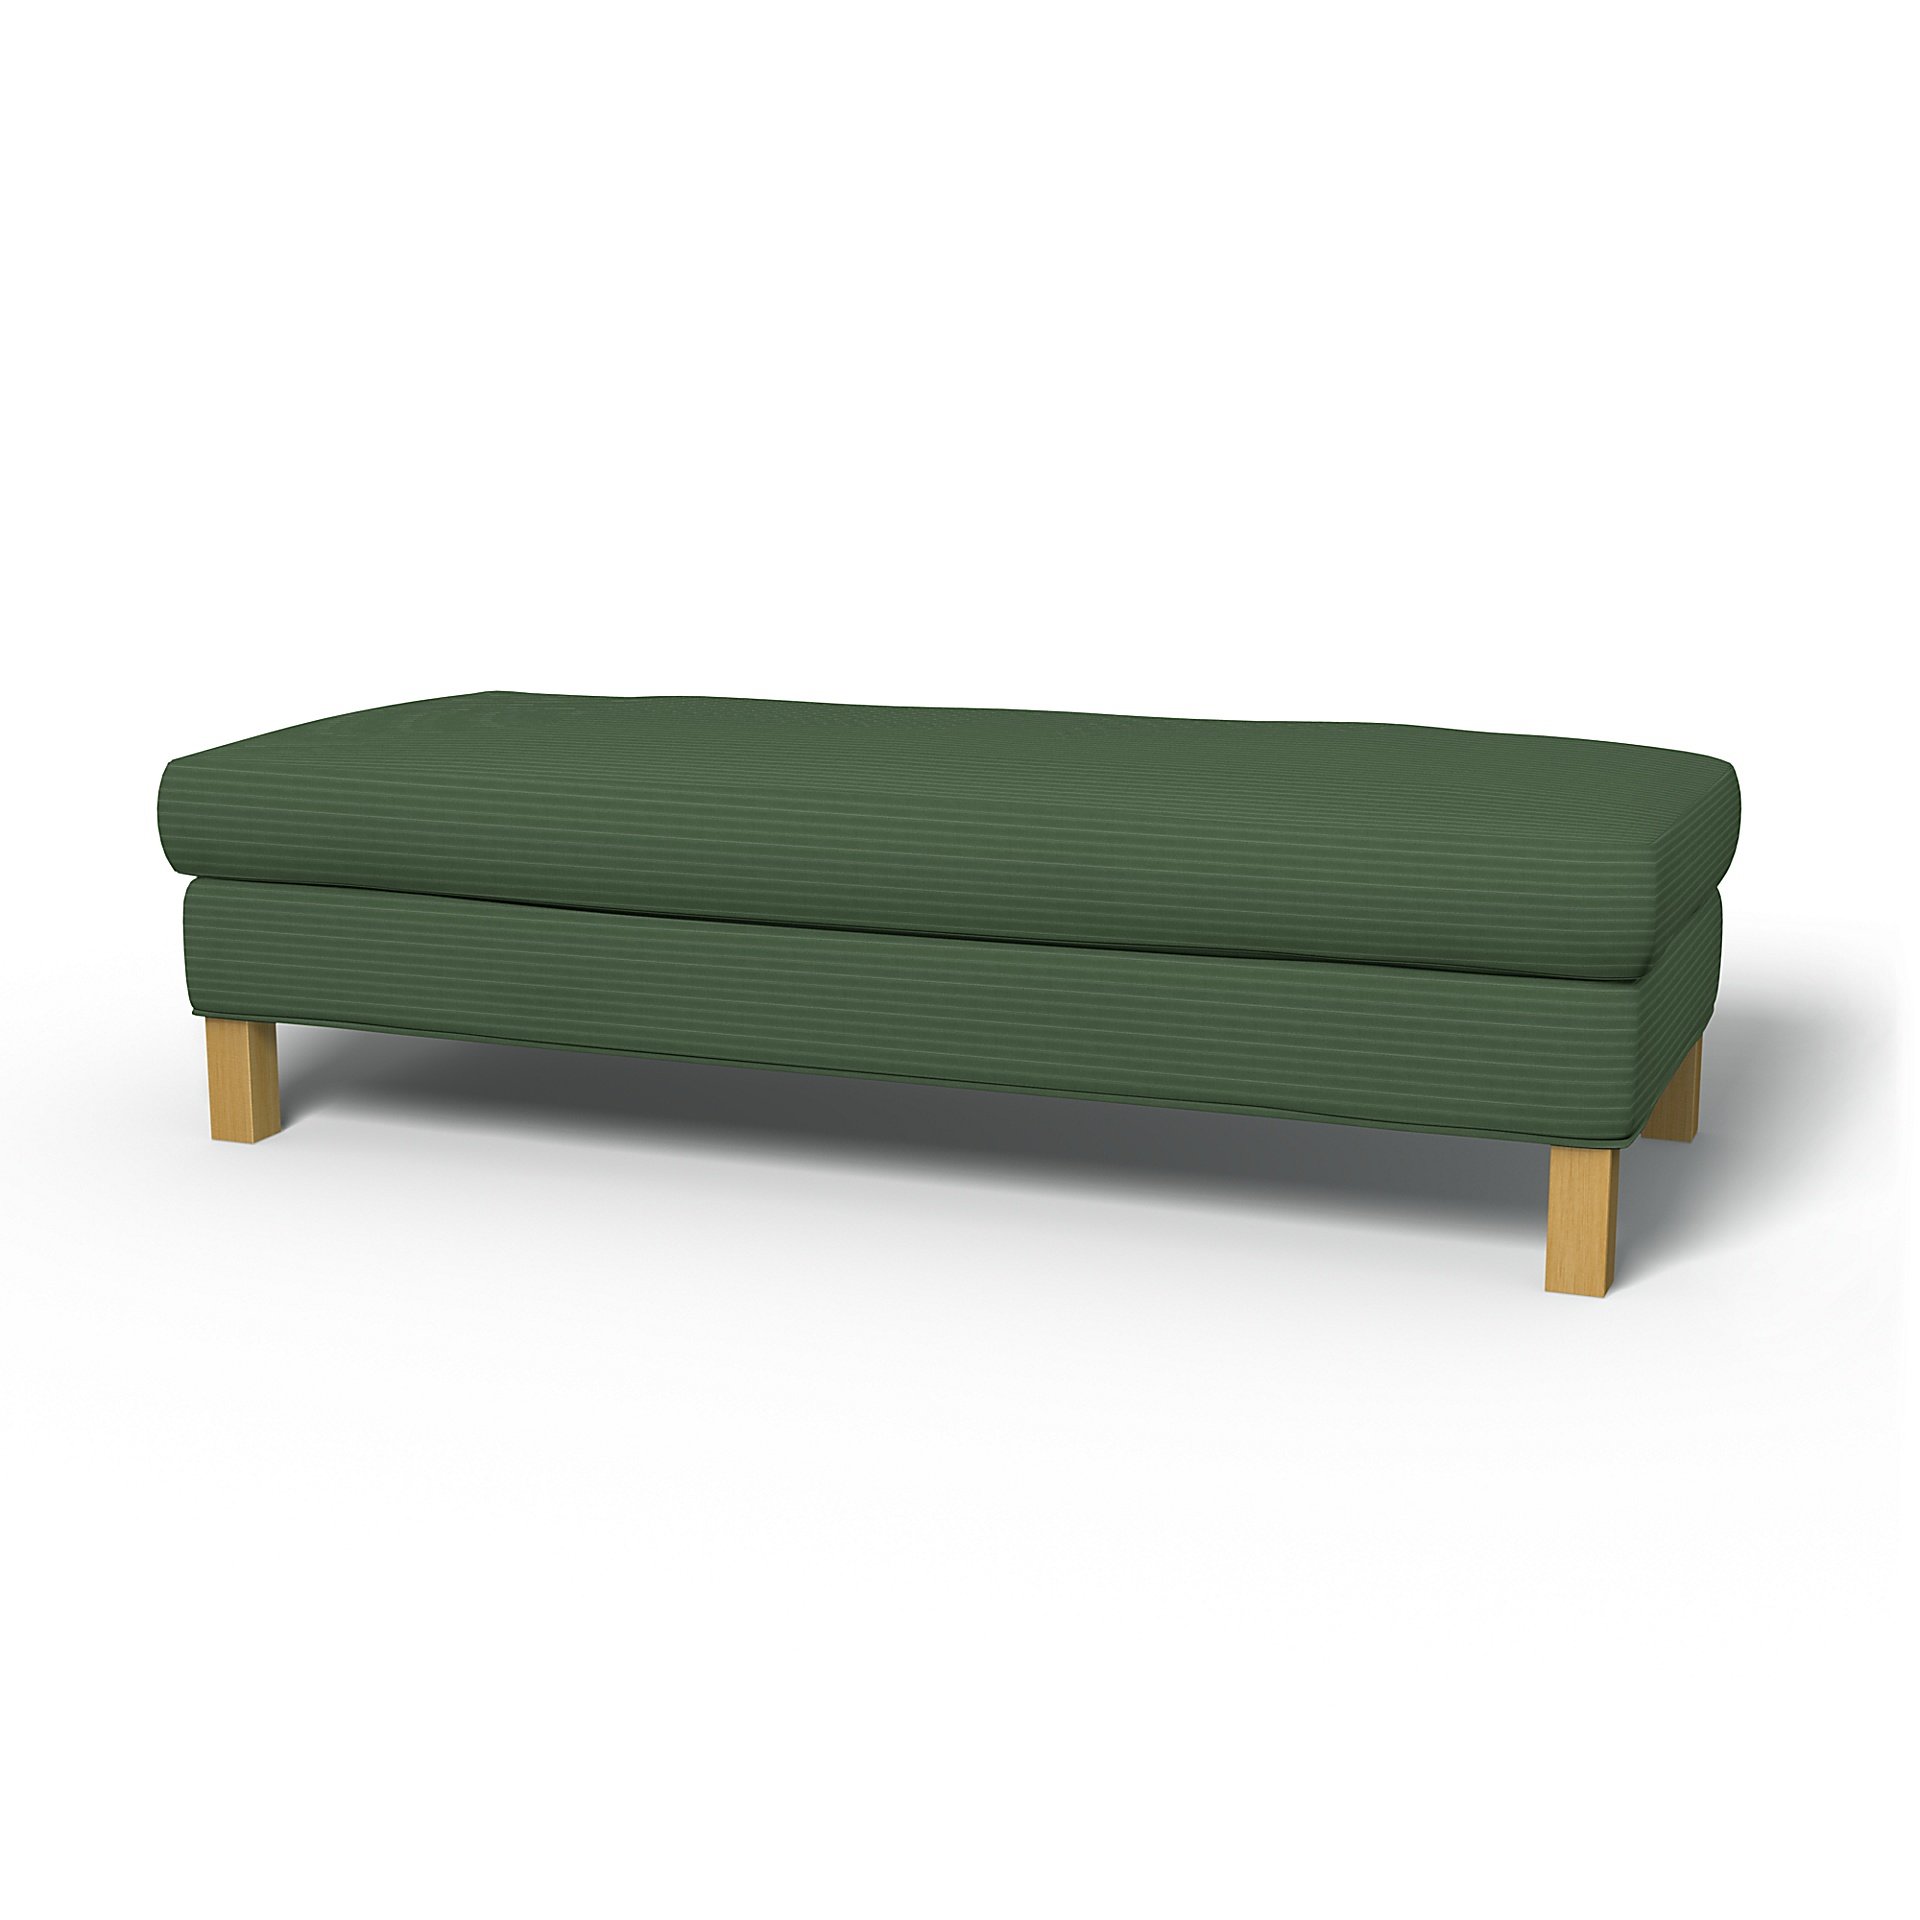 IKEA - Karlanda Bench Cover, Palm Green, Corduroy - Bemz